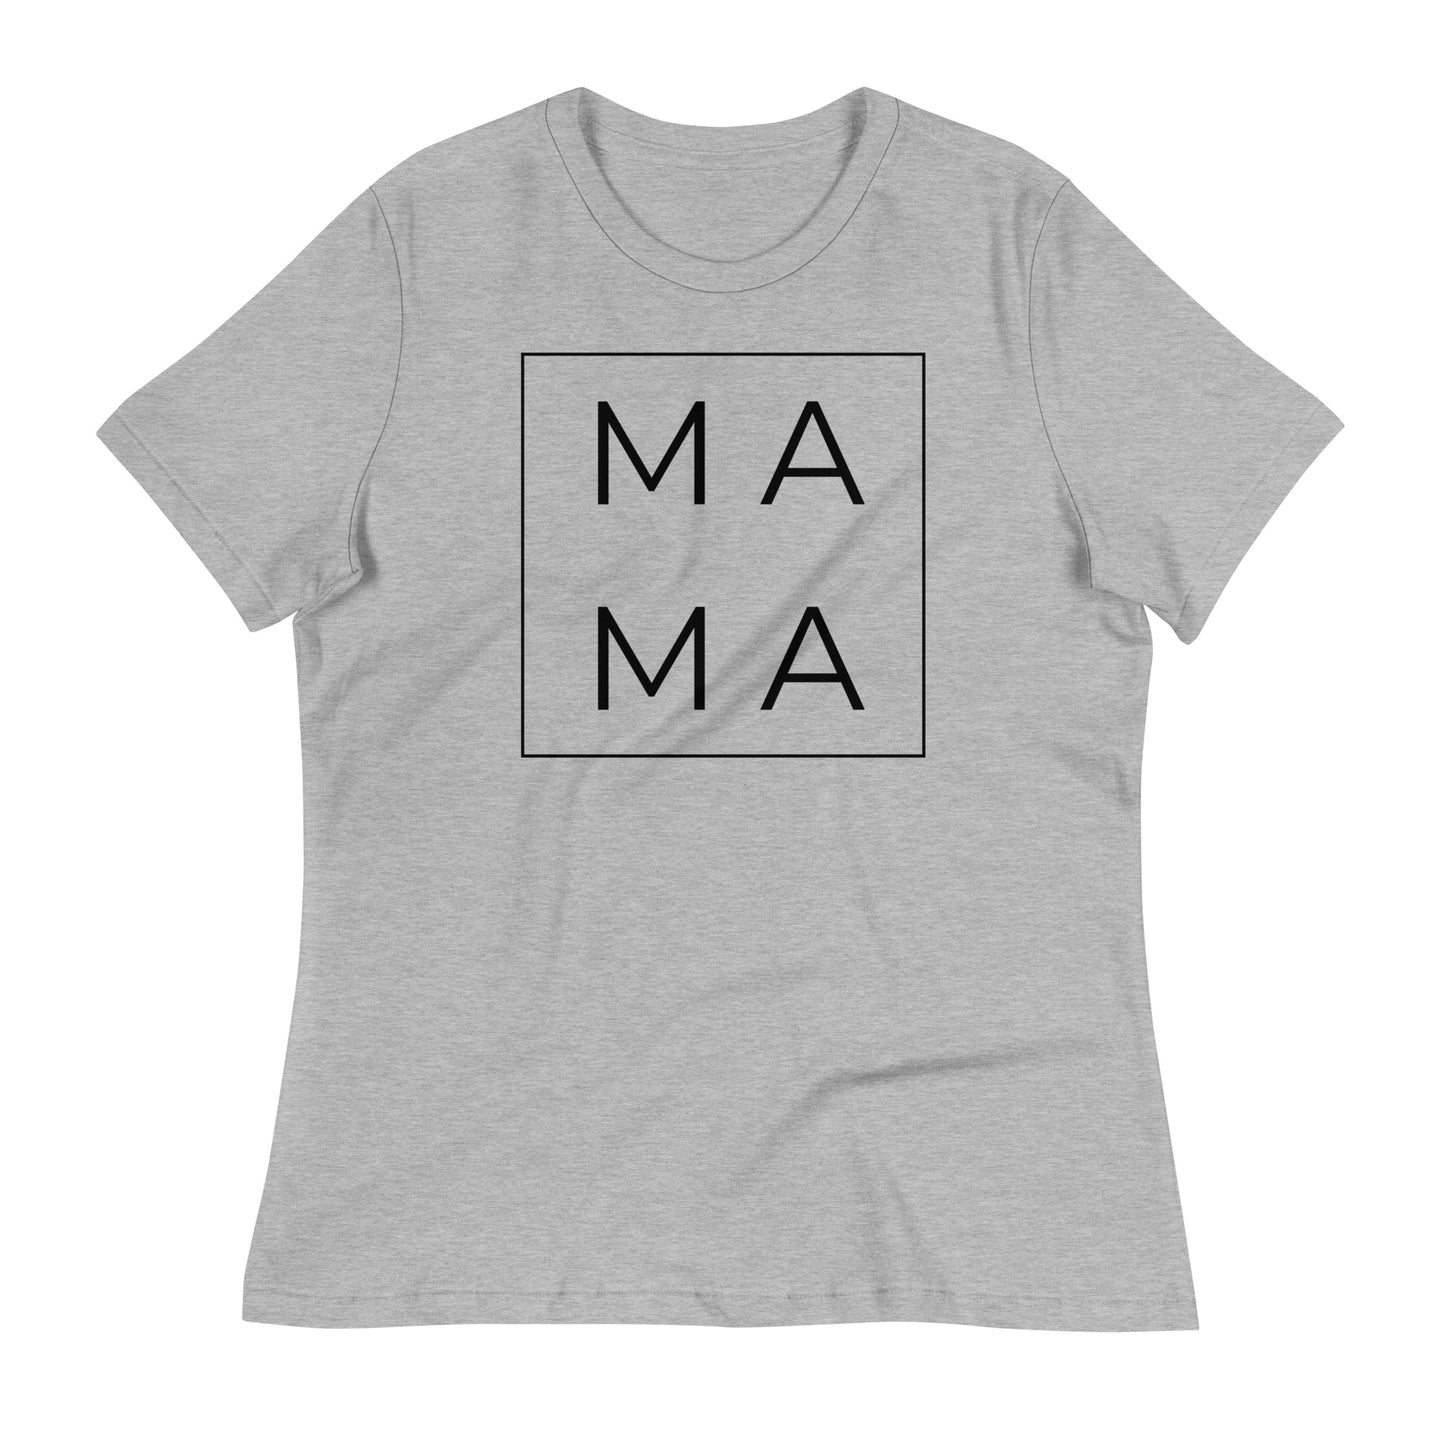 MAMA - Women's Graphic Crew